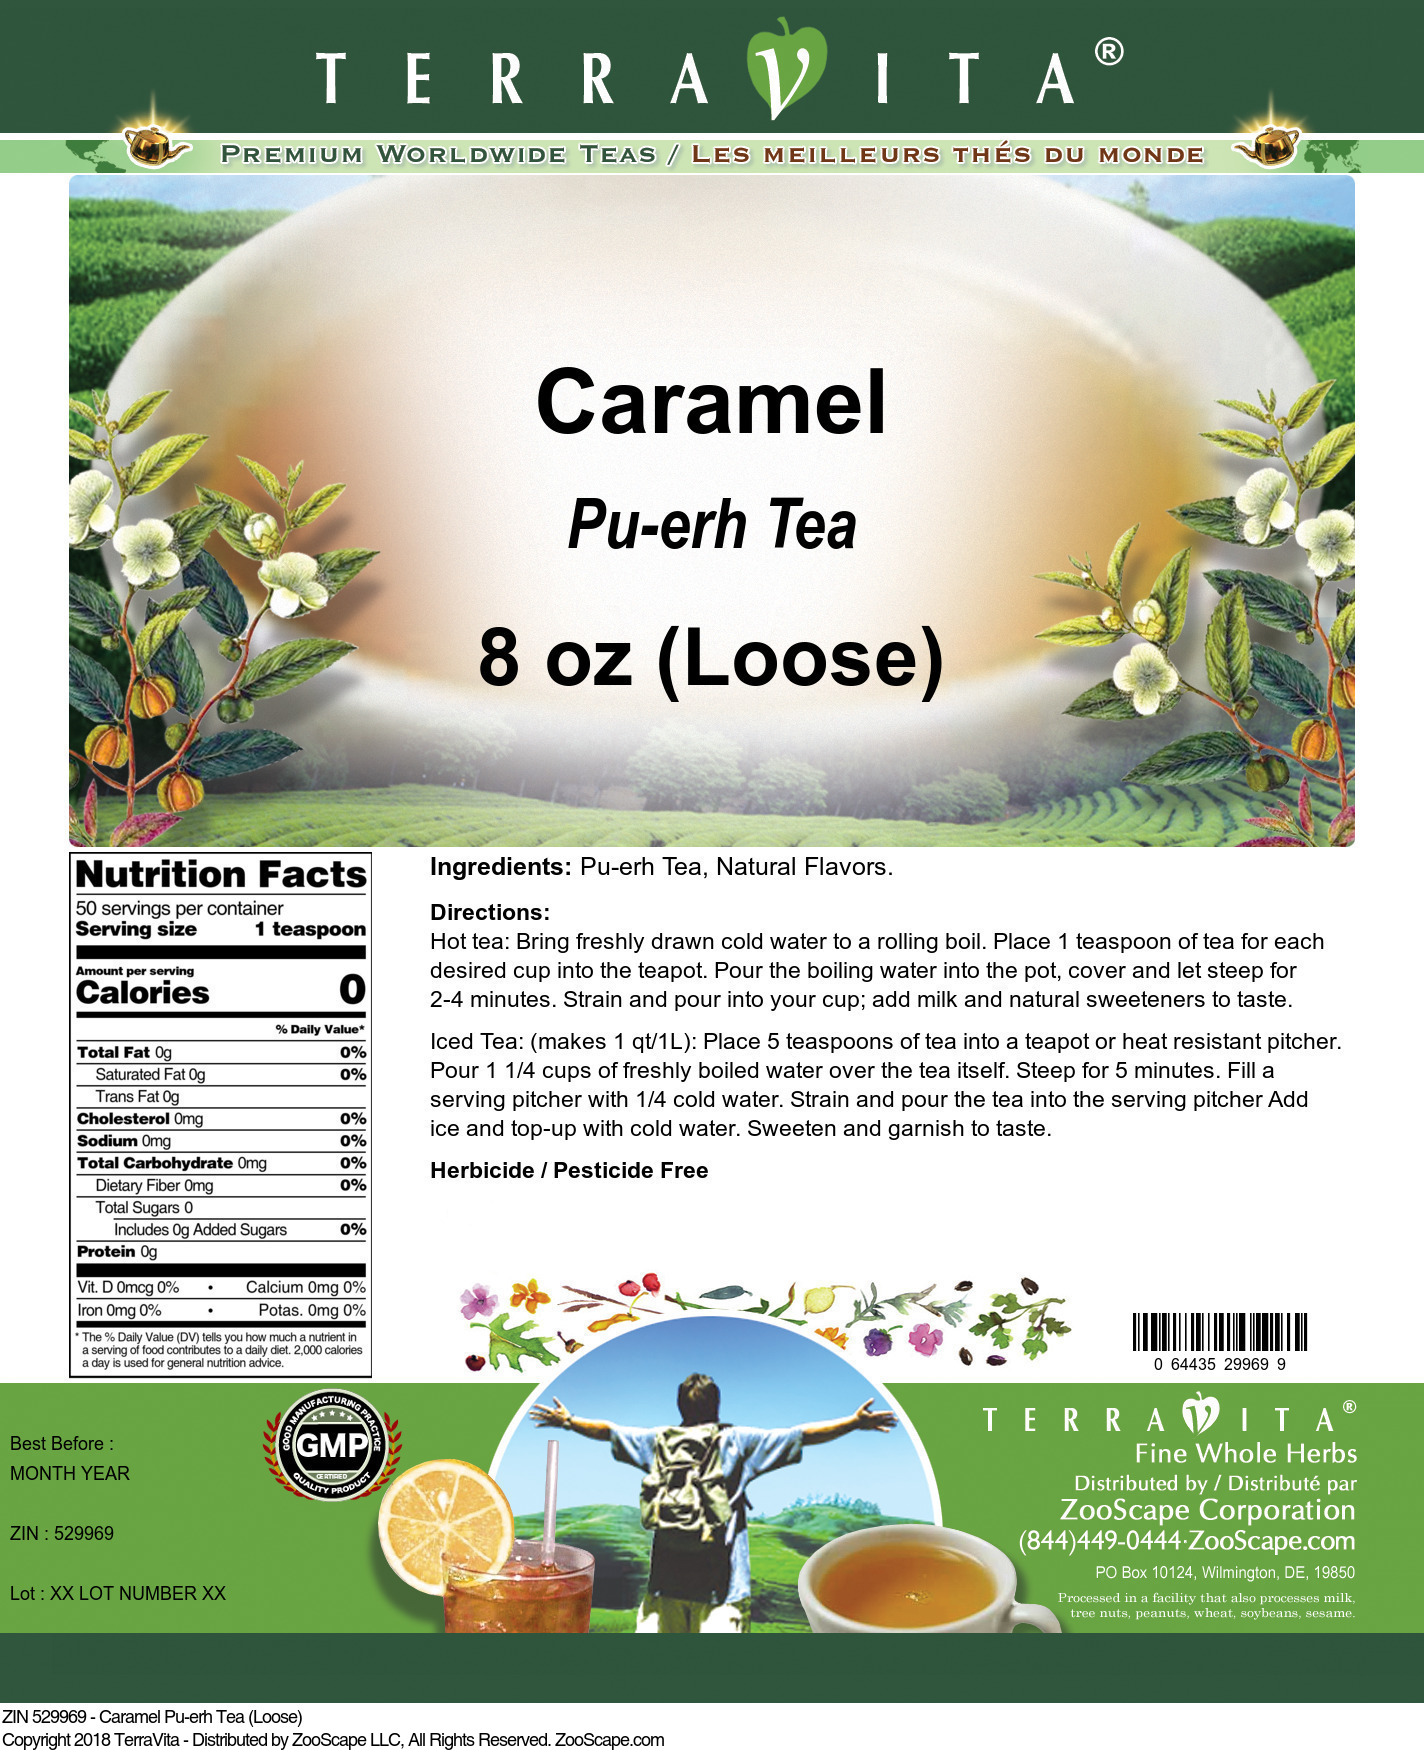 Caramel Pu-erh Tea (Loose) - Label